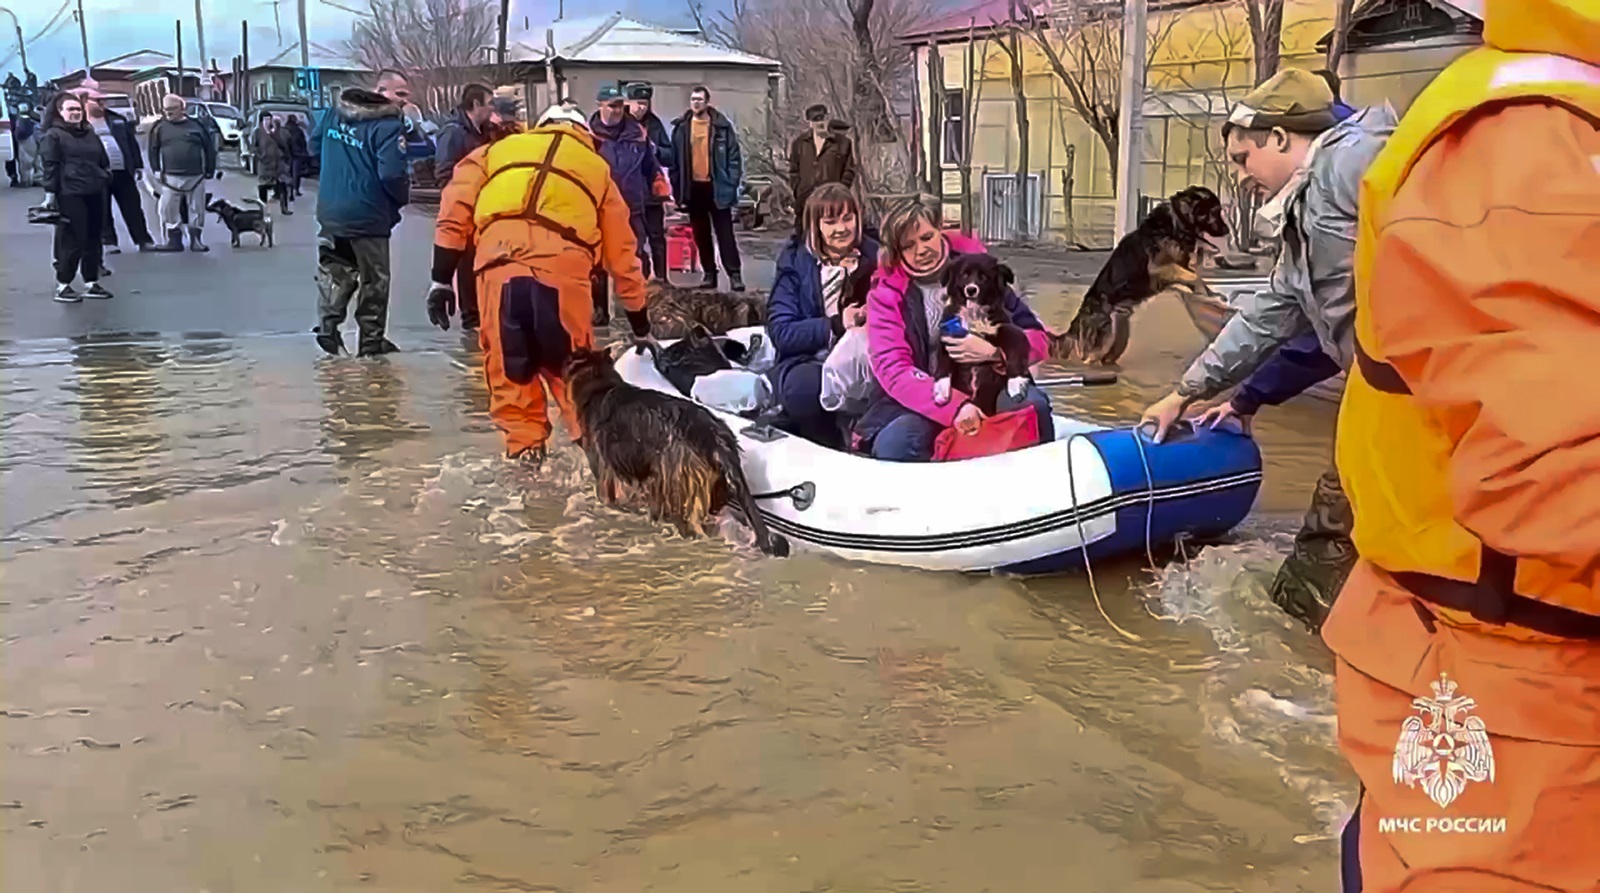 Απεγκλωβισμός κατοίκων στο πλημμυρισμένο Όρσκ